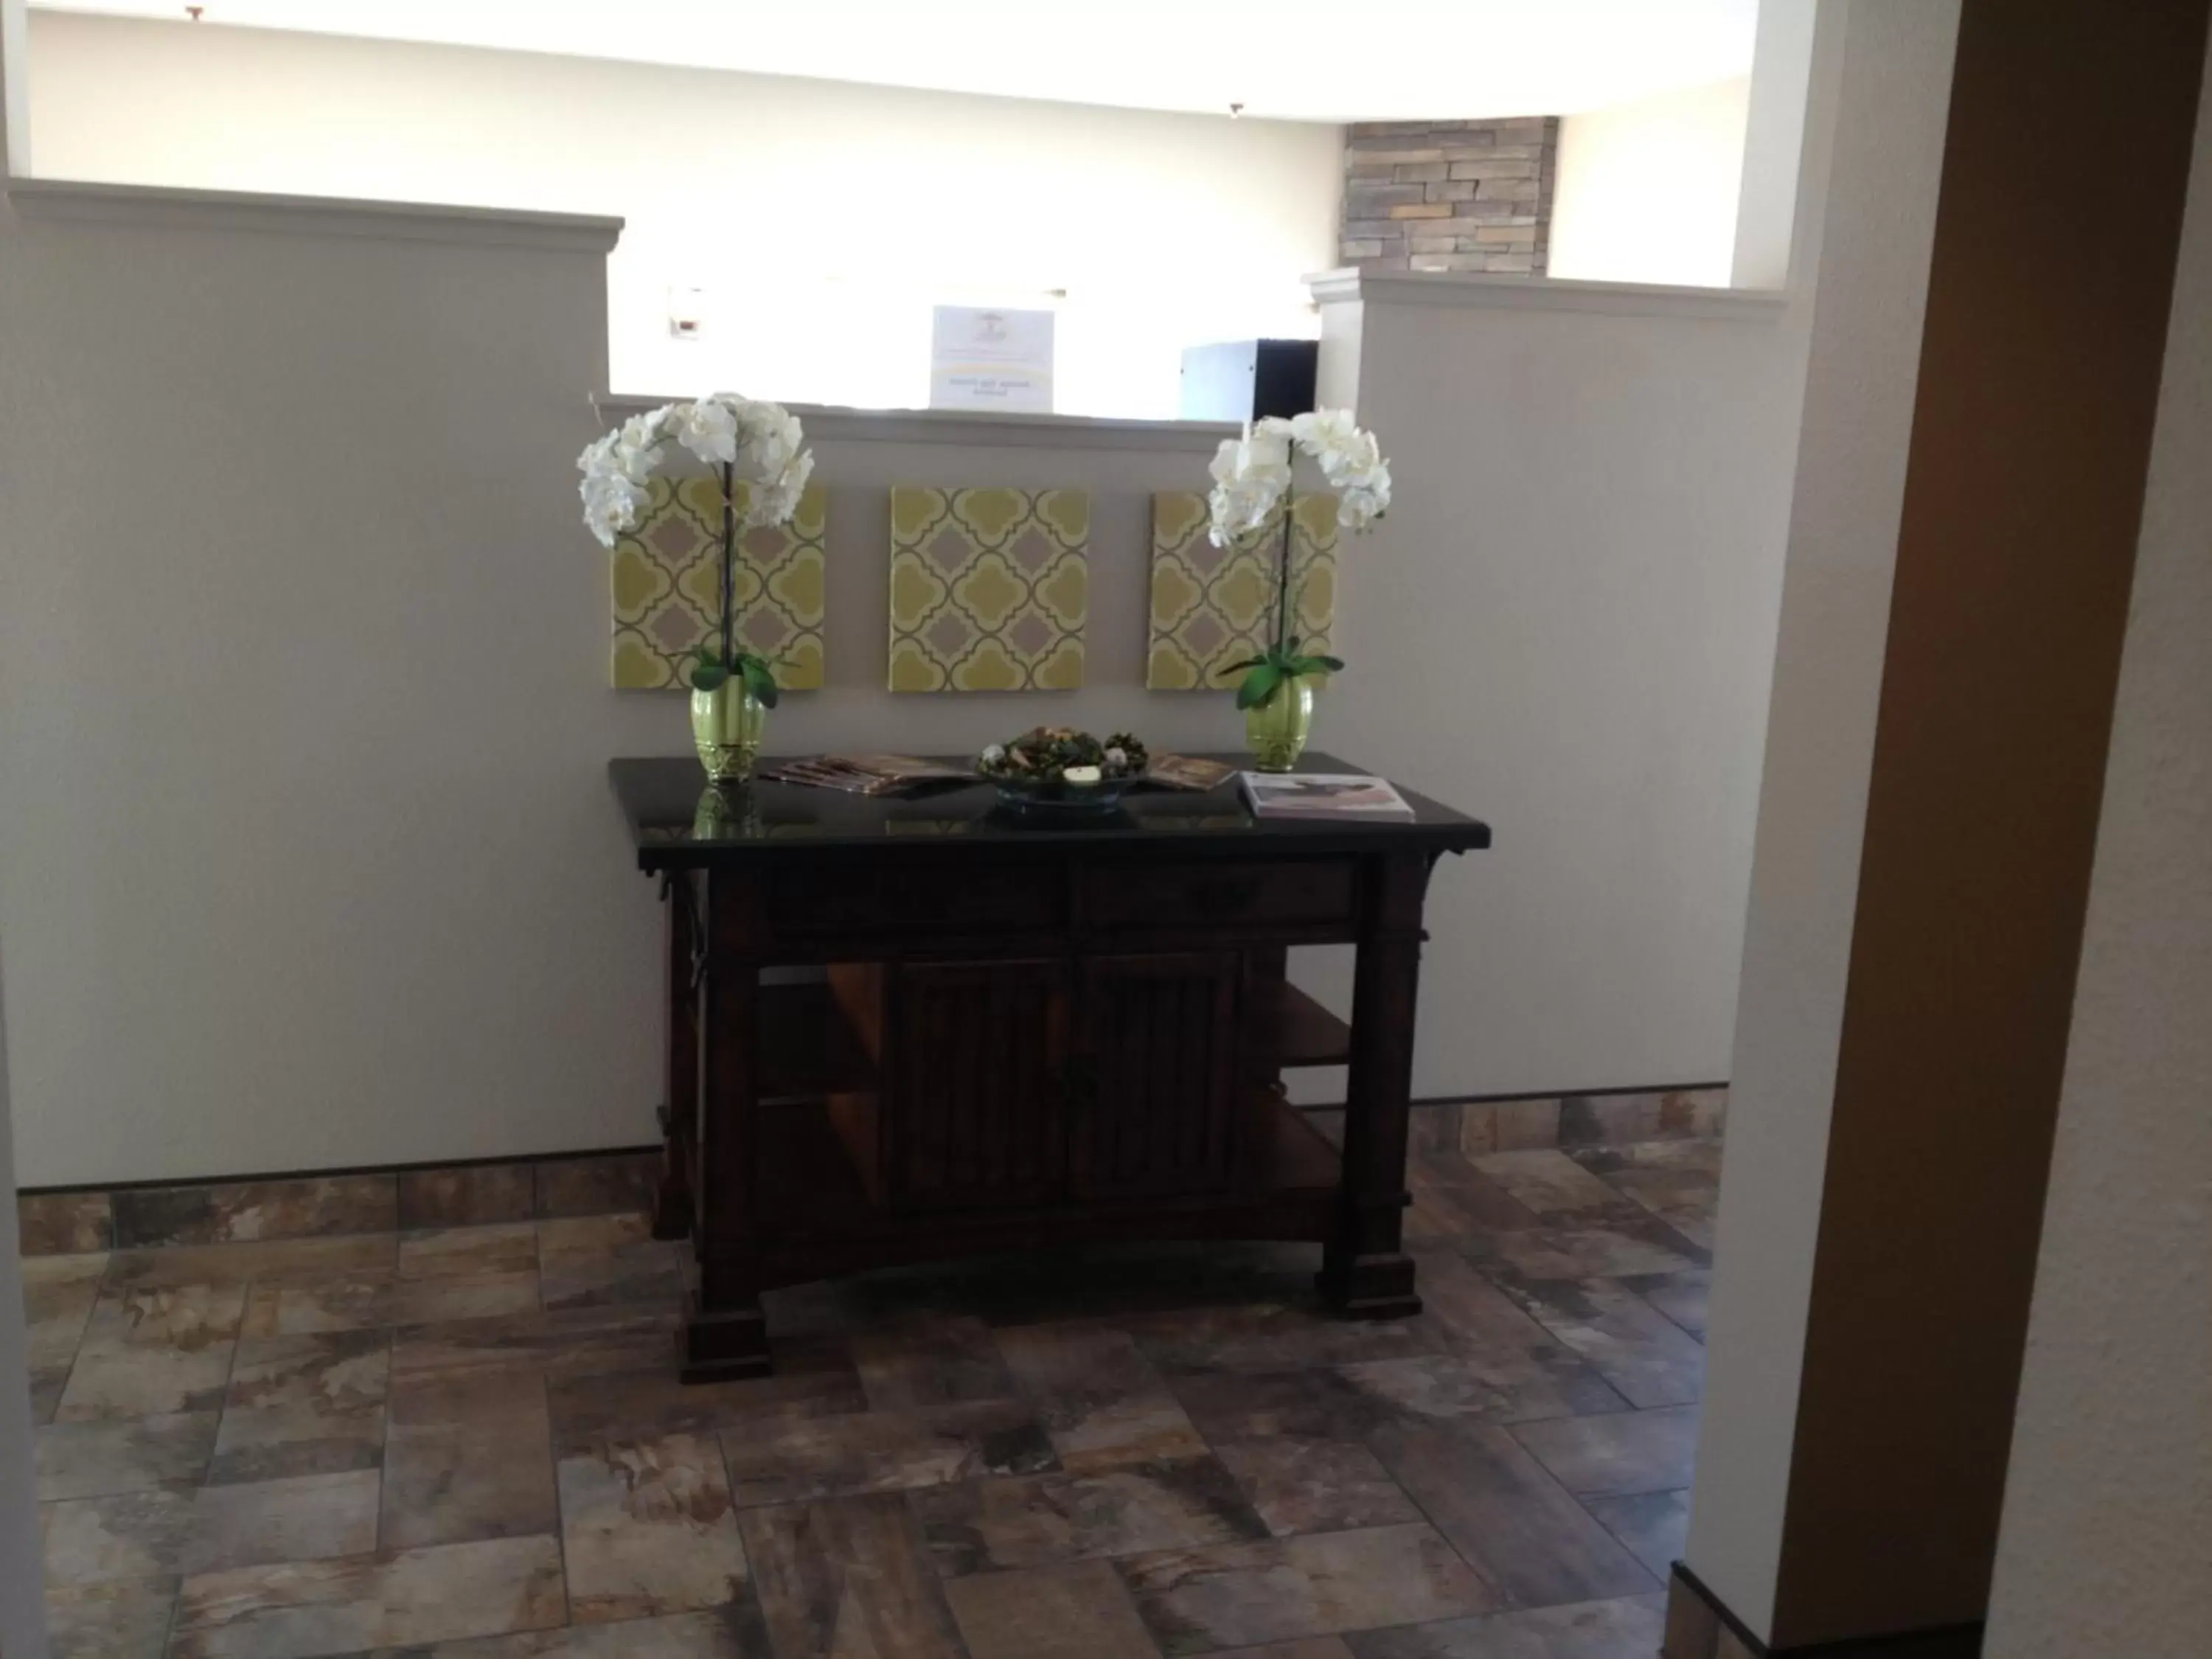 Lobby or reception, Lobby/Reception in Super 8 by Wyndham Pocatello